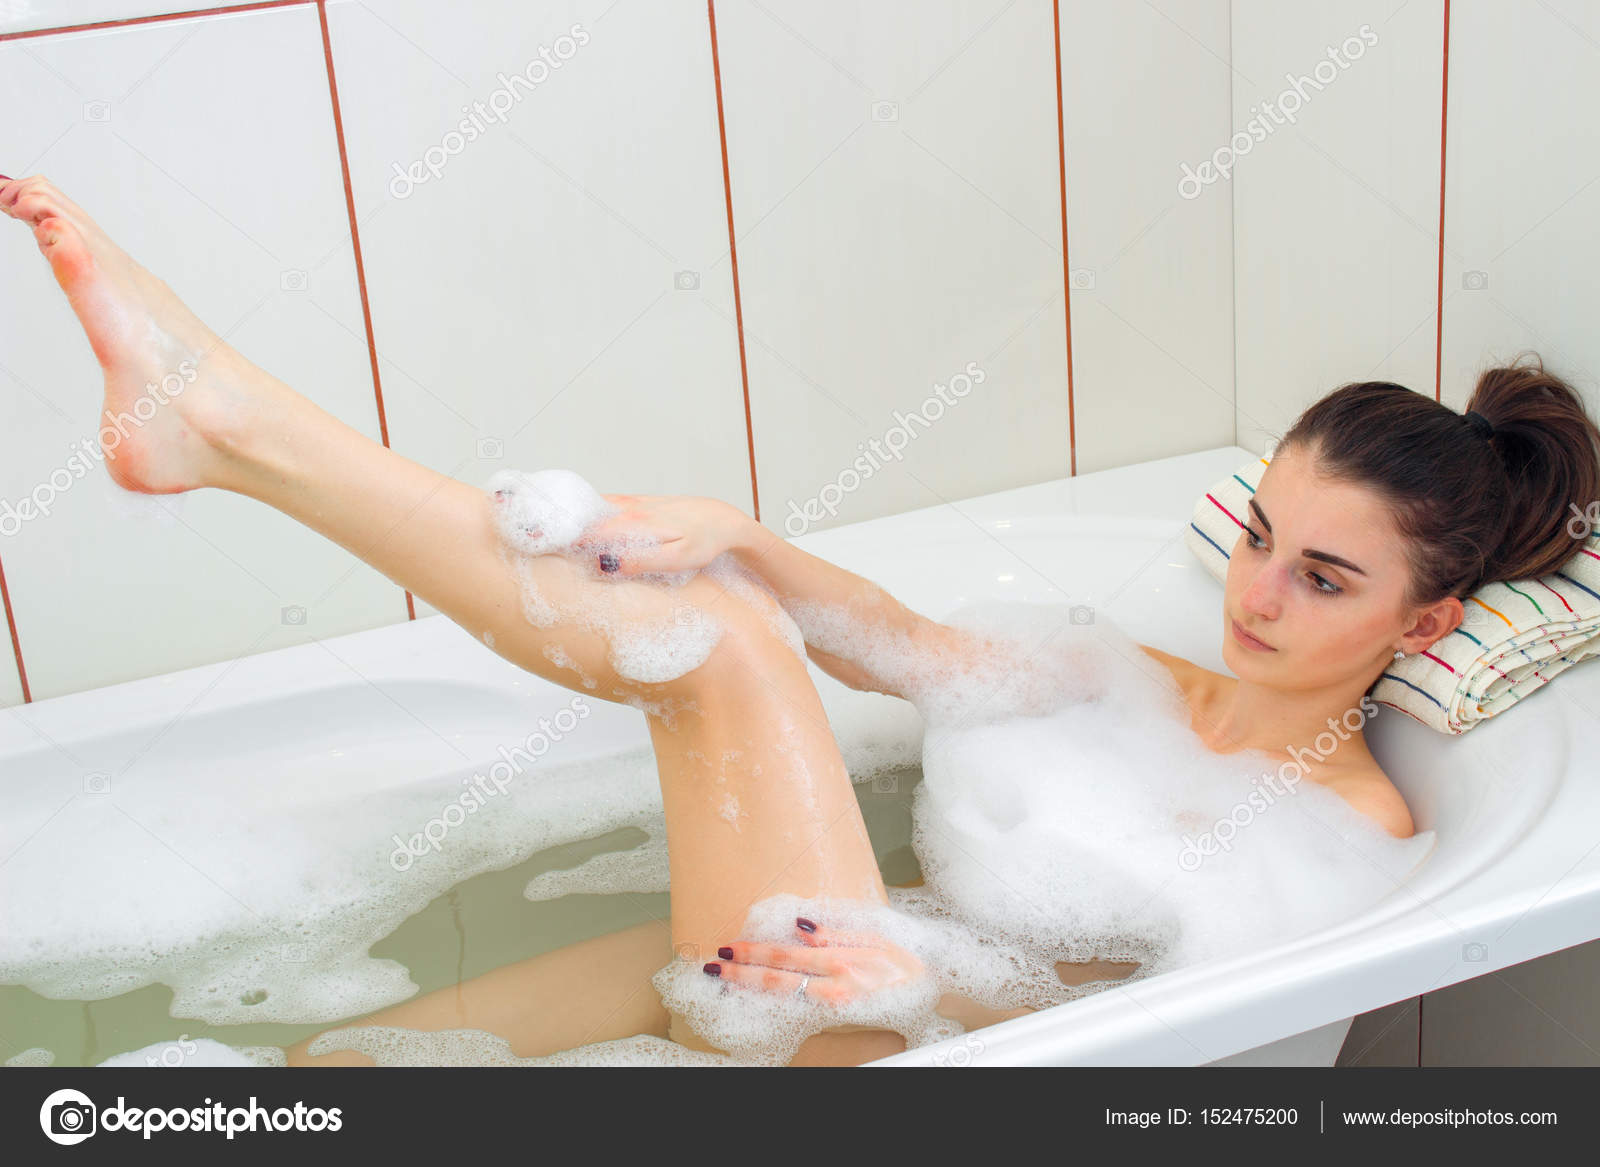 эротика голых девочек в ванной фото 18